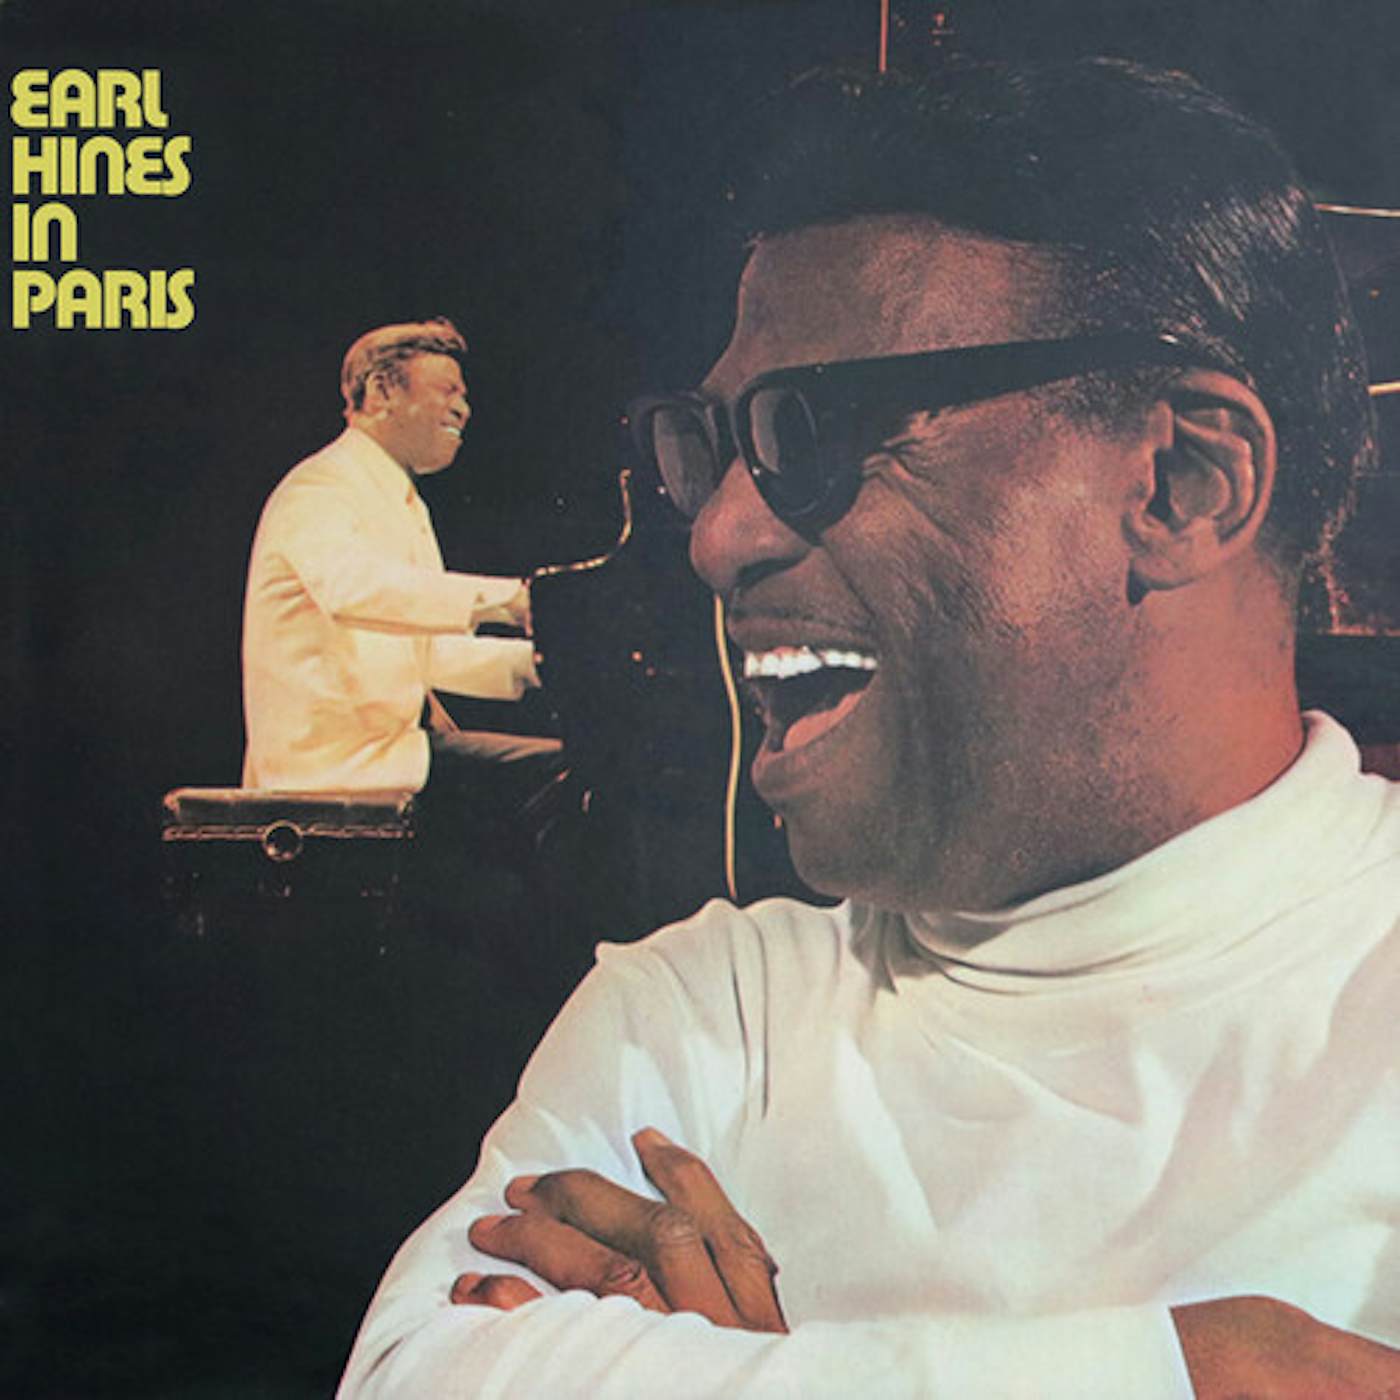 Earl Hines IN PARIS CD